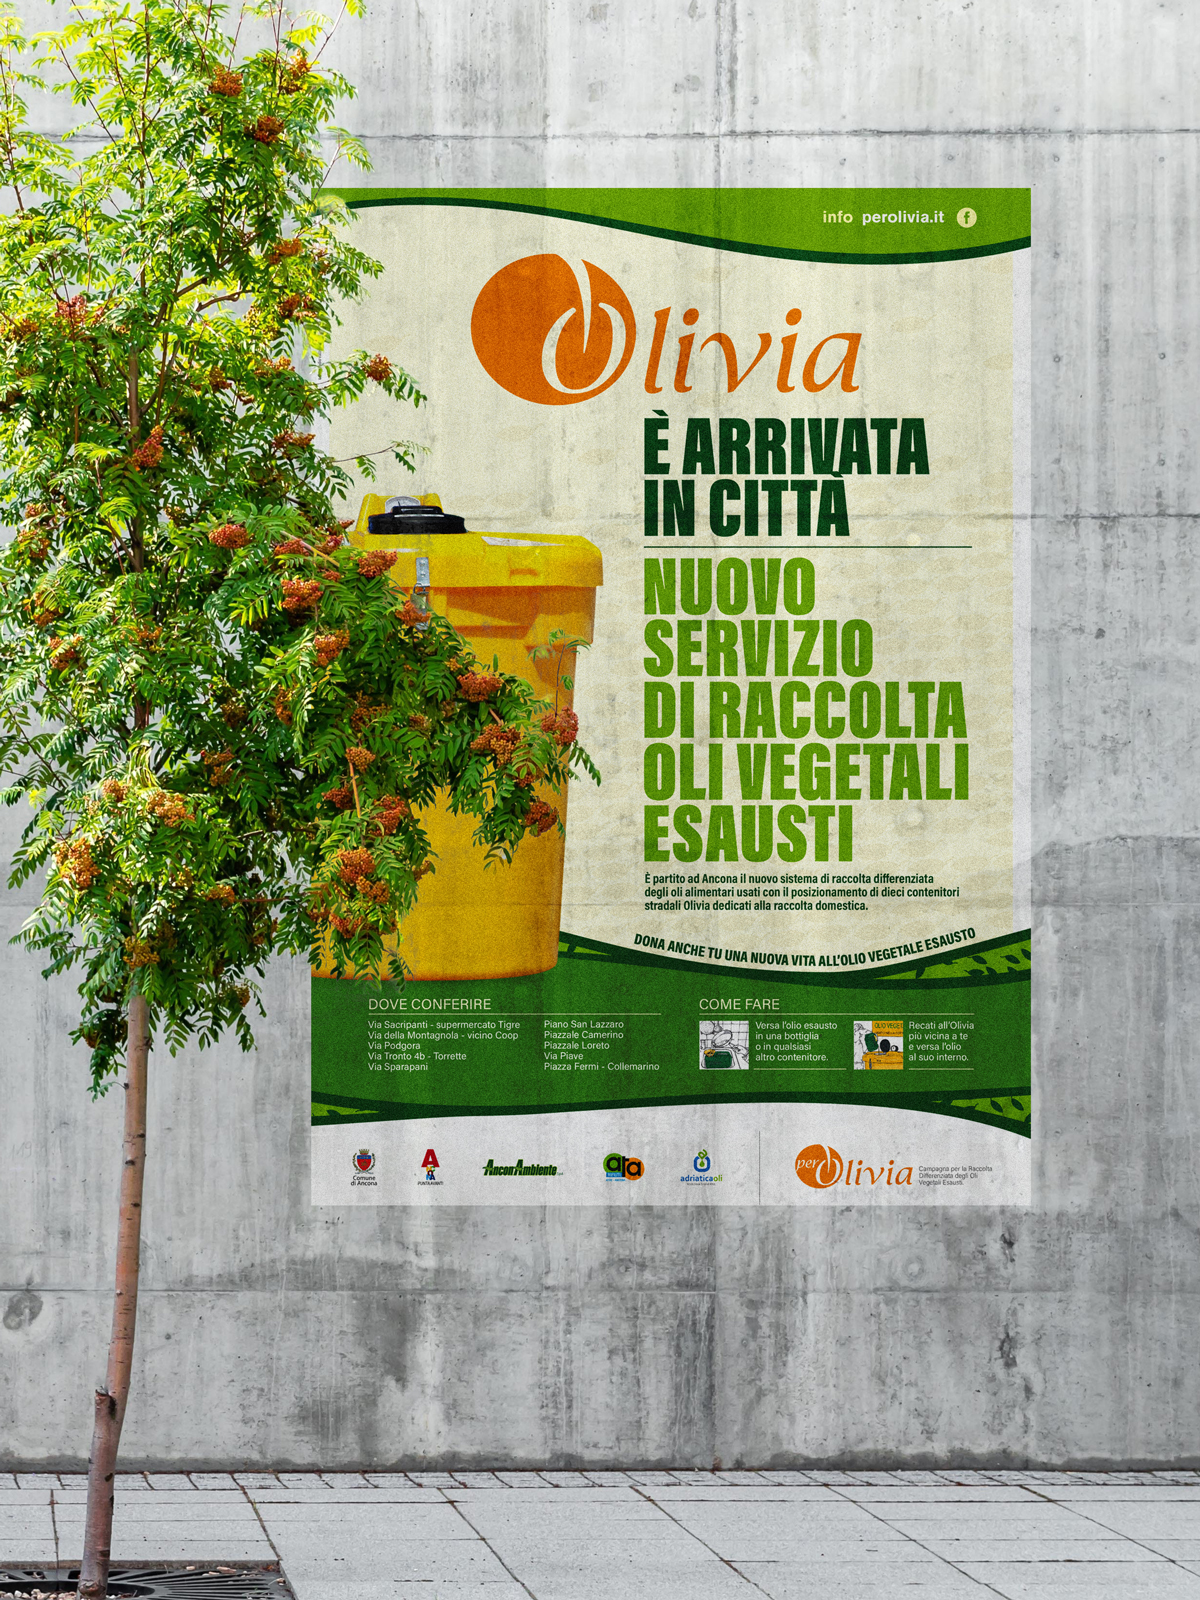 adriaticaoli per olivia per il pianeta